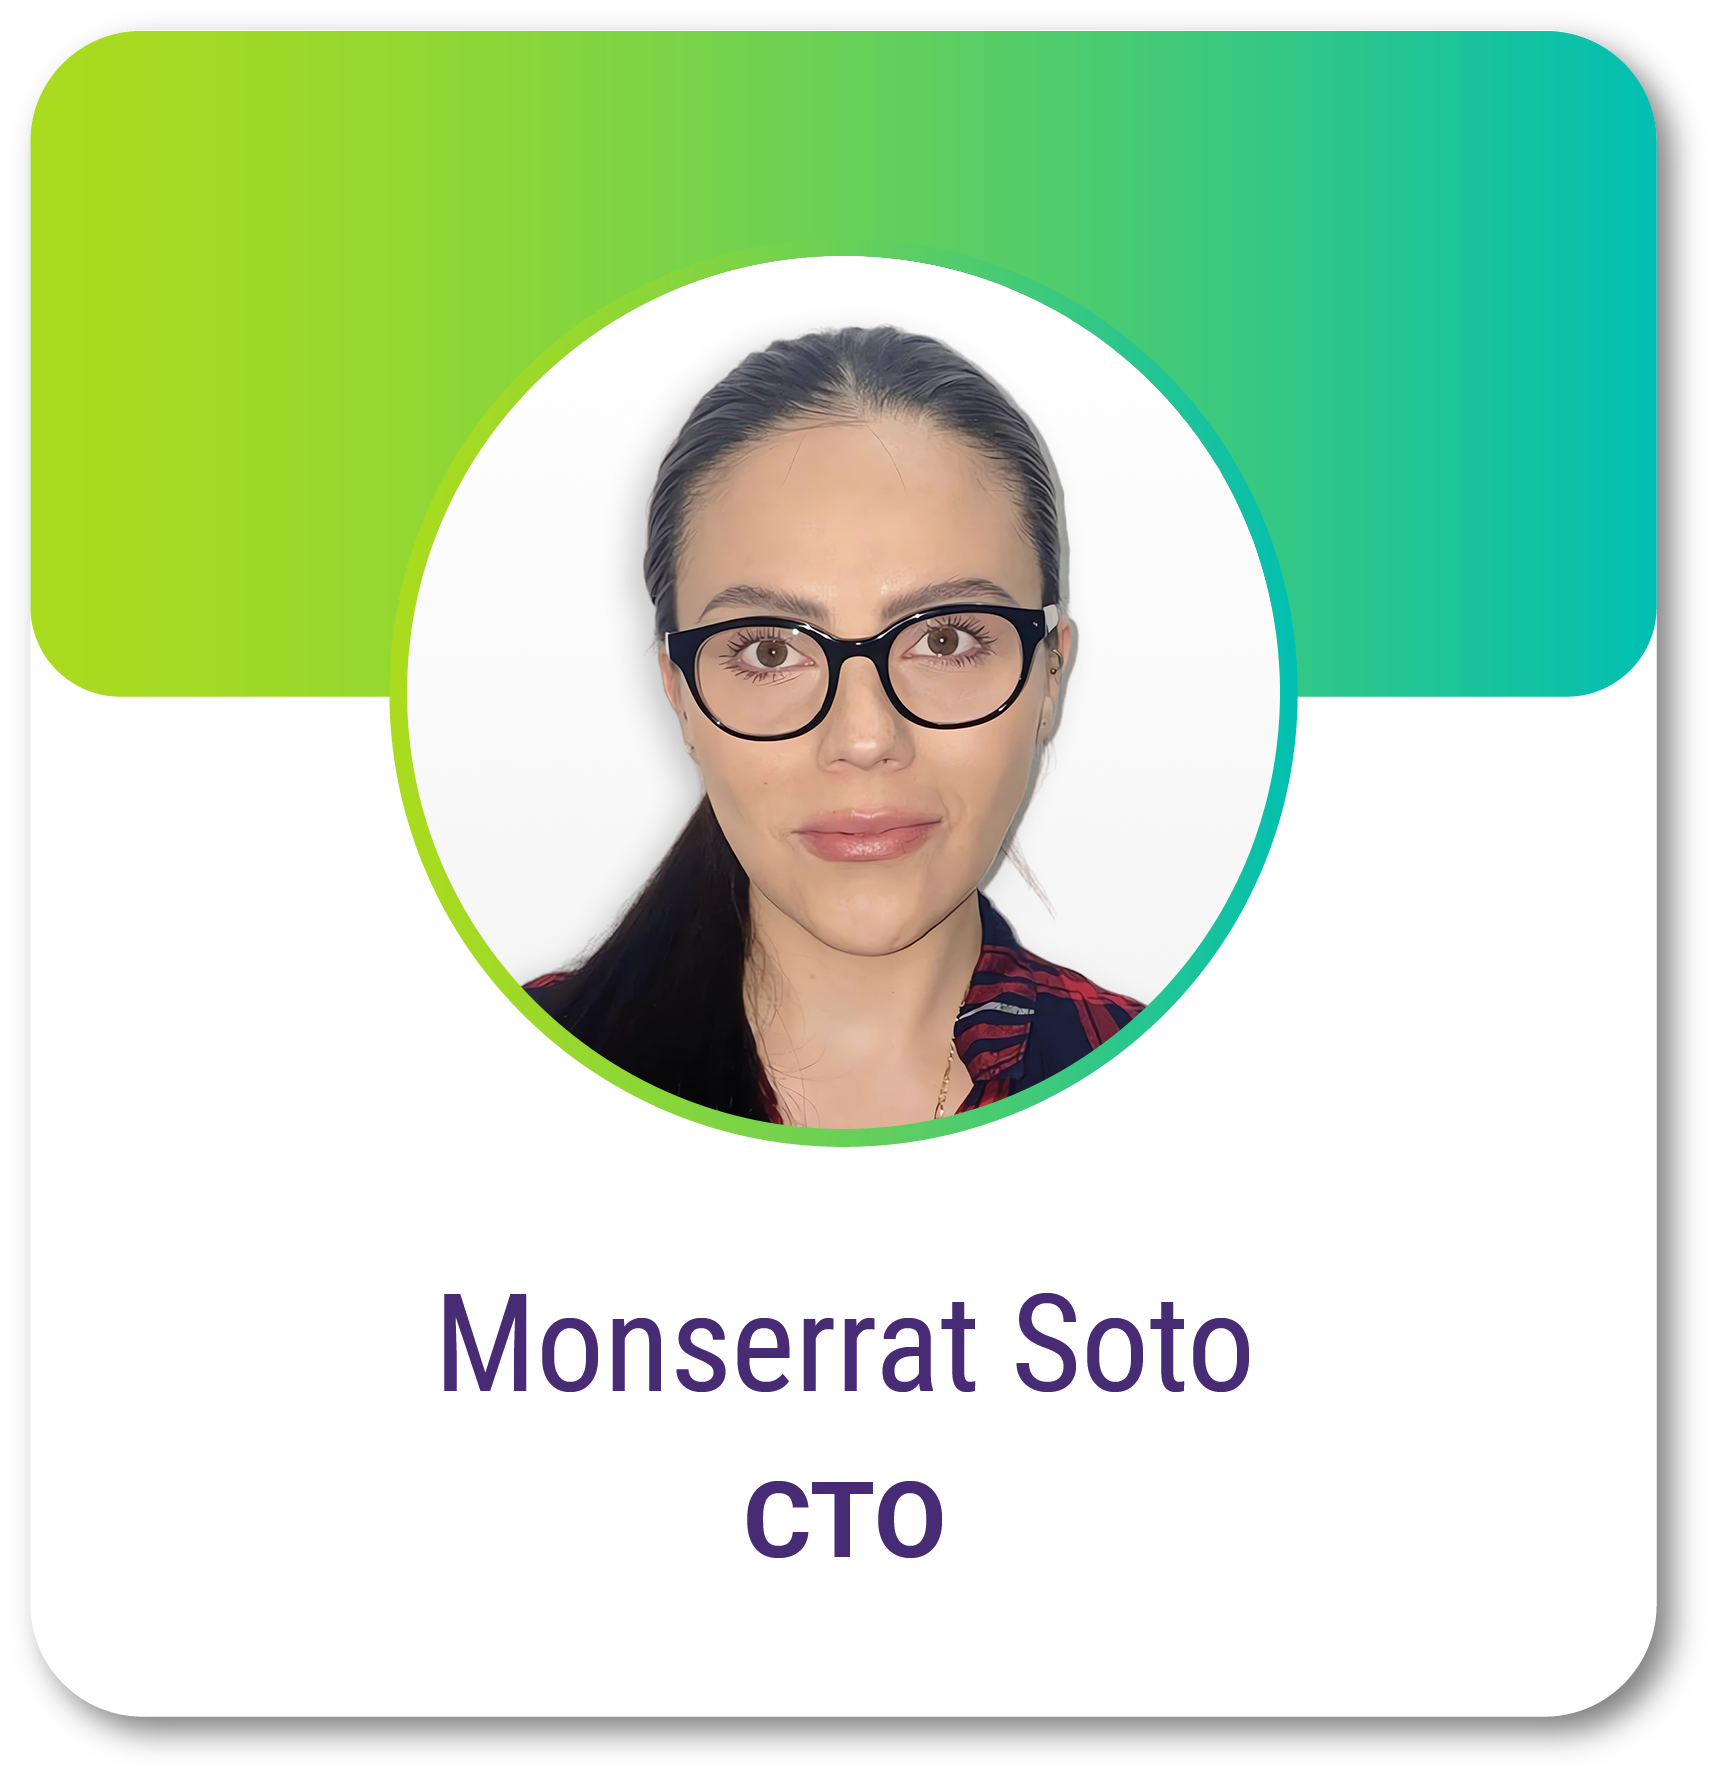 Monserrat Soto - CTO